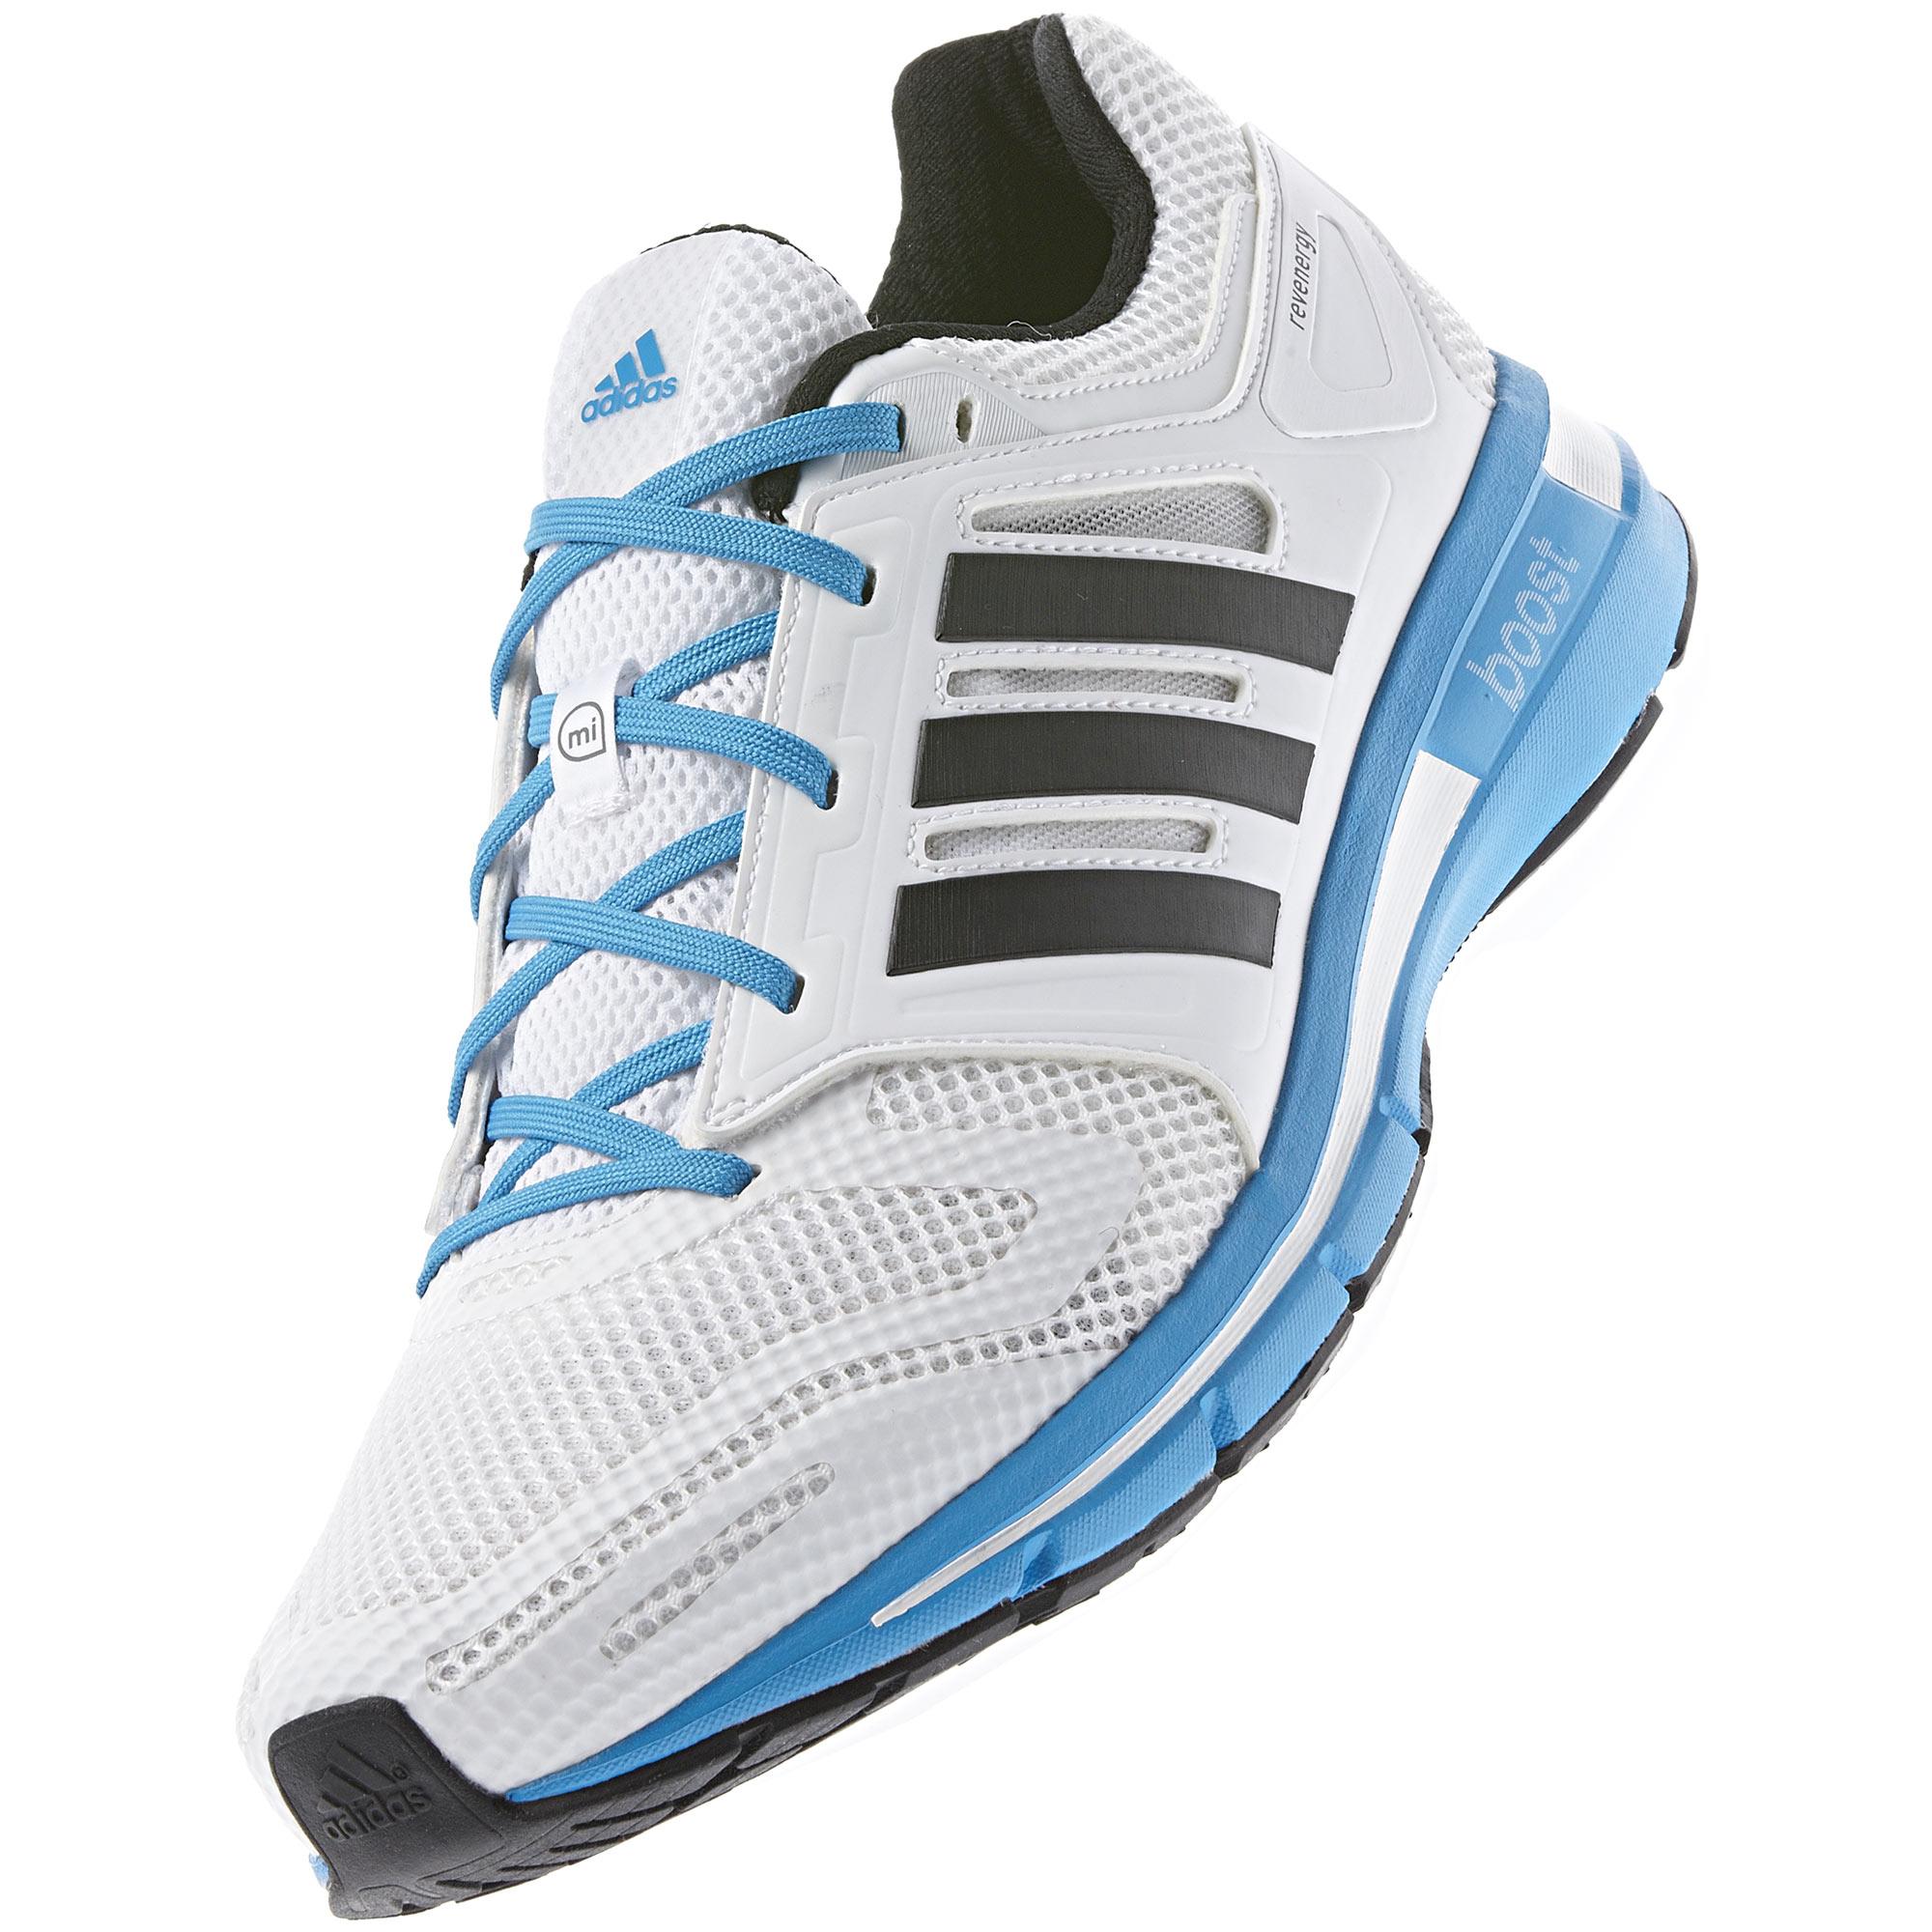 Adidas Mens Revenergy Boost Running Shoes - White/Solar Blue